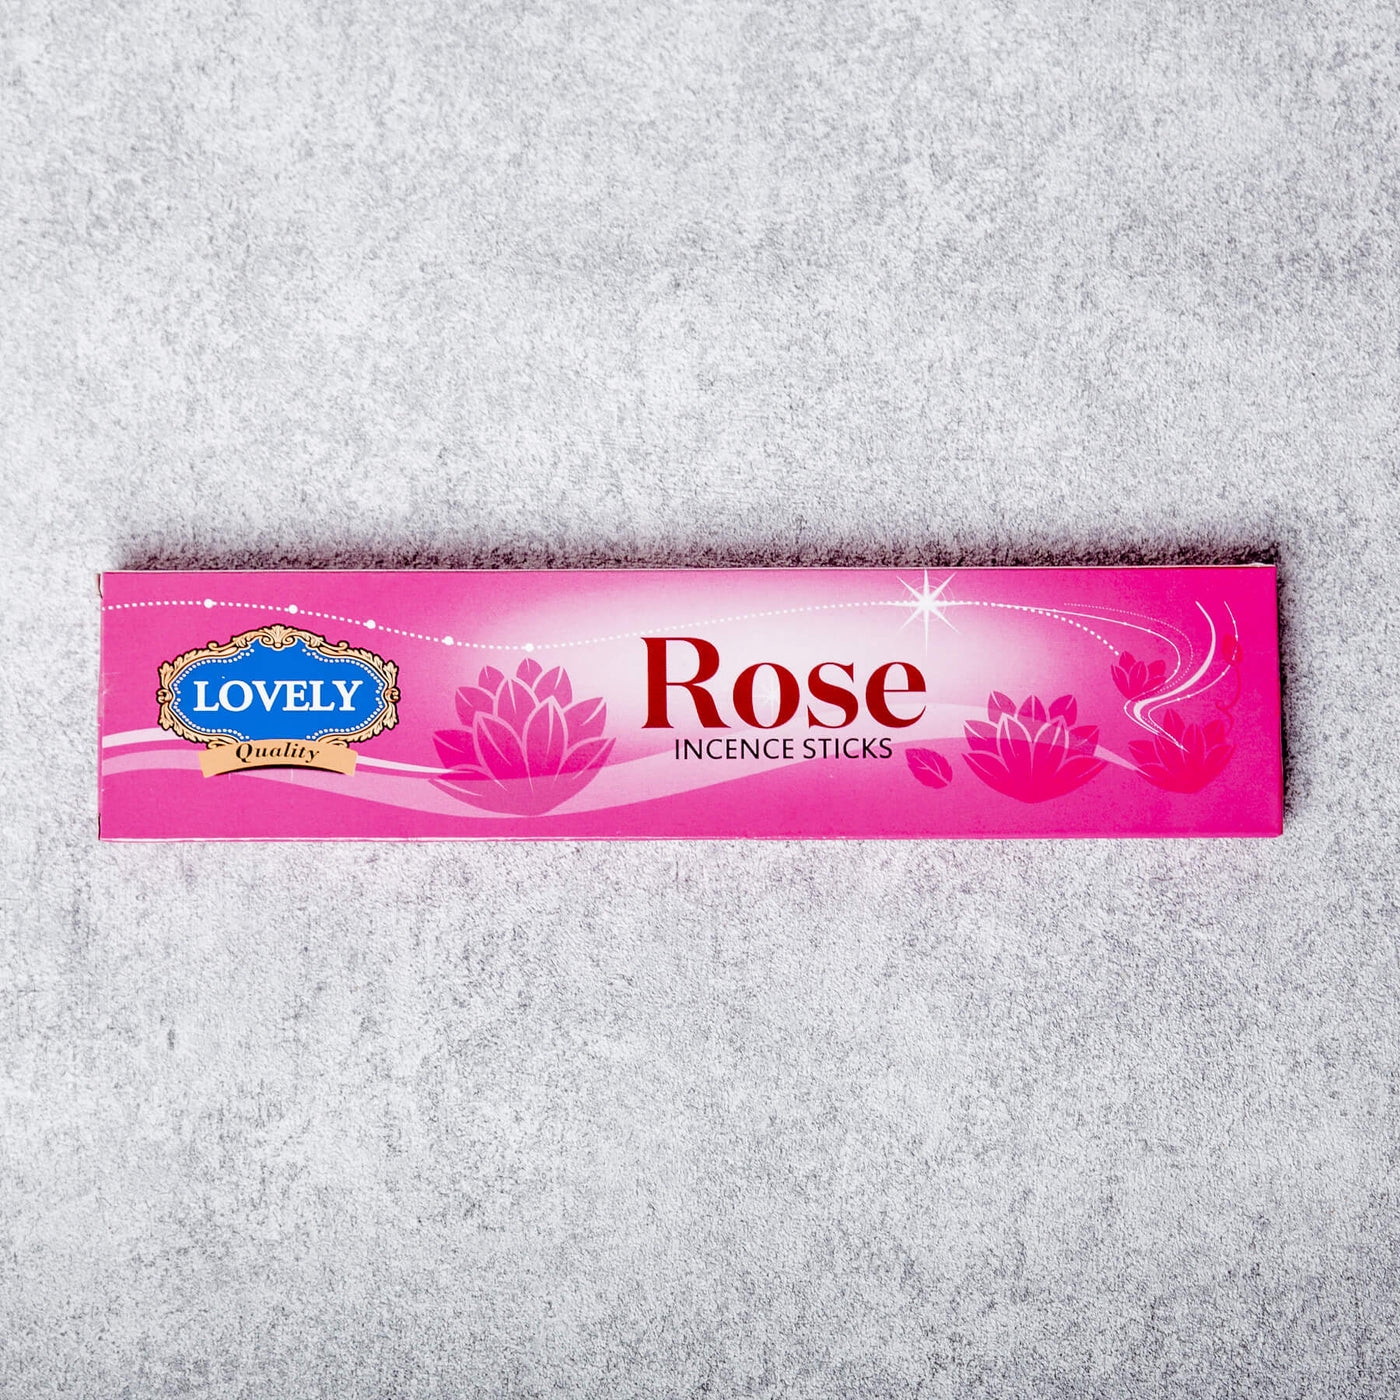 Lovely - rose fragrance